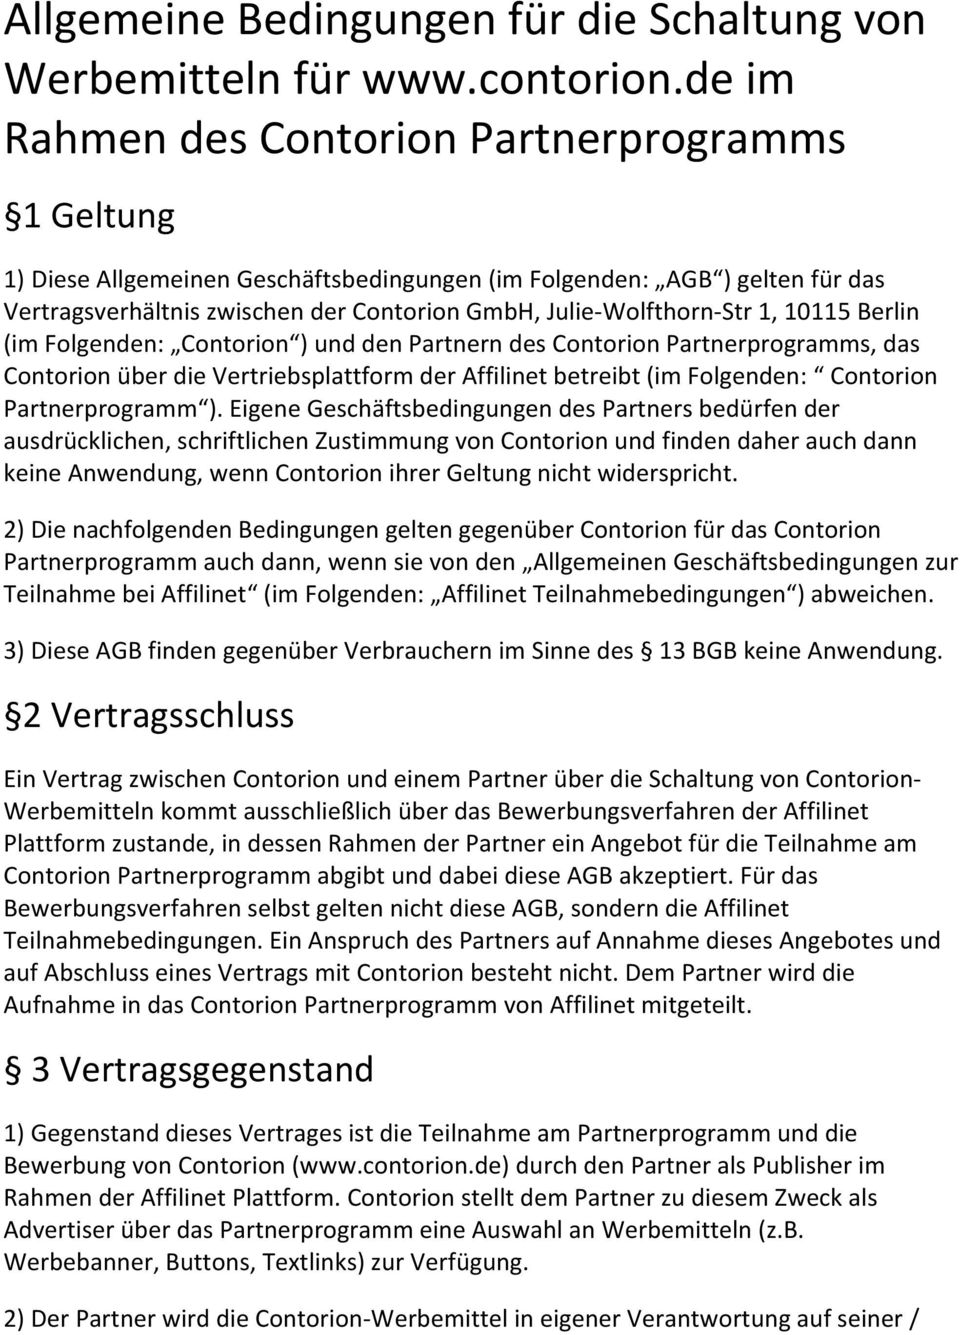 Str 1, 10115 Berlin (im Folgenden: Contorion ) und den Partnern des Contorion Partnerprogramms, das Contorion über die Vertriebsplattform der Affilinet betreibt (im Folgenden: Contorion